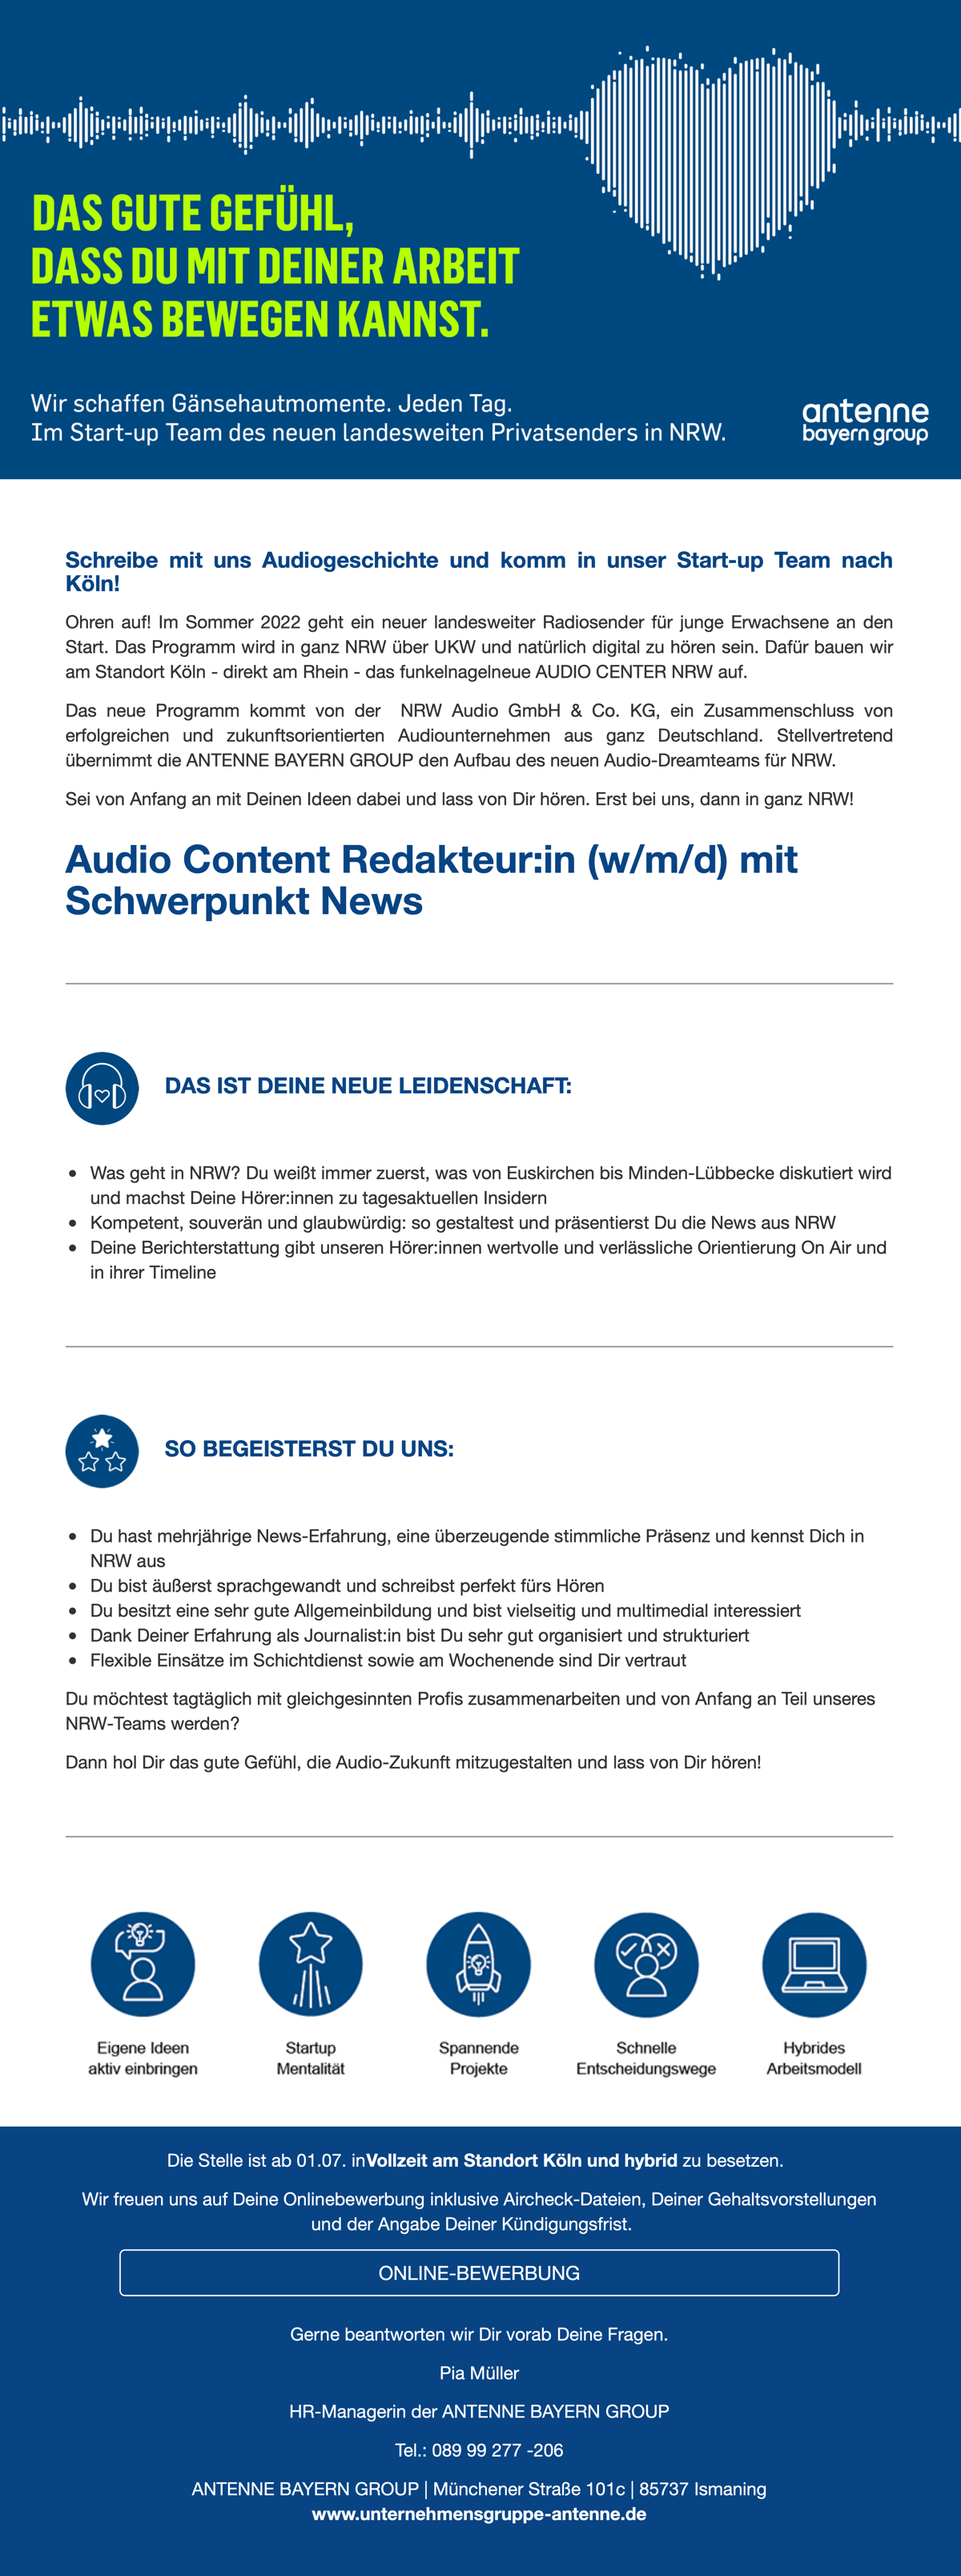 Audio Content Redakteur:in (w/m/d) mit Schwerpunkt News für NRW